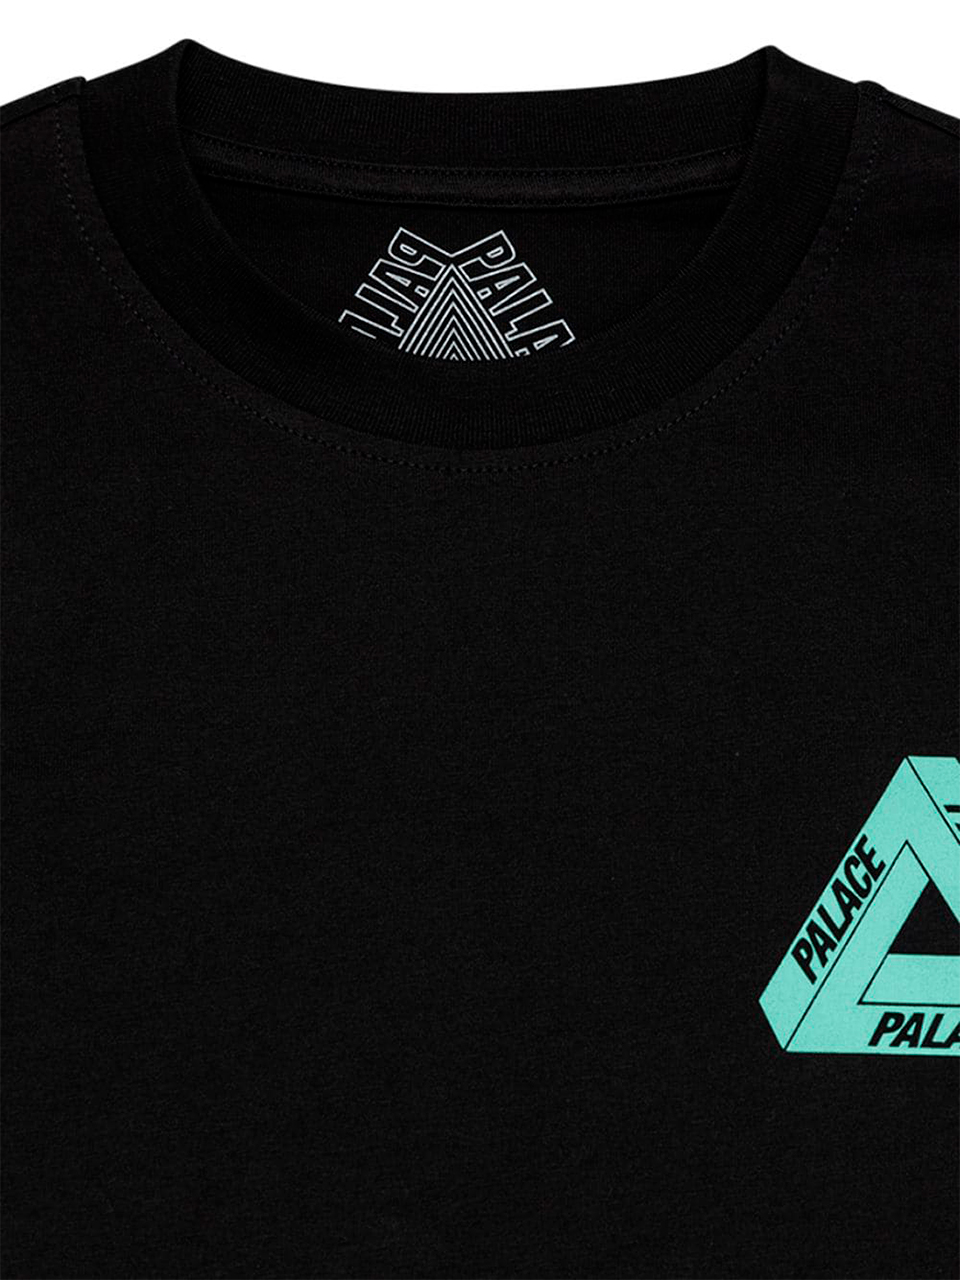 Imagem de: Camiseta Palace Preta Tri-To-Help Logo Ciano